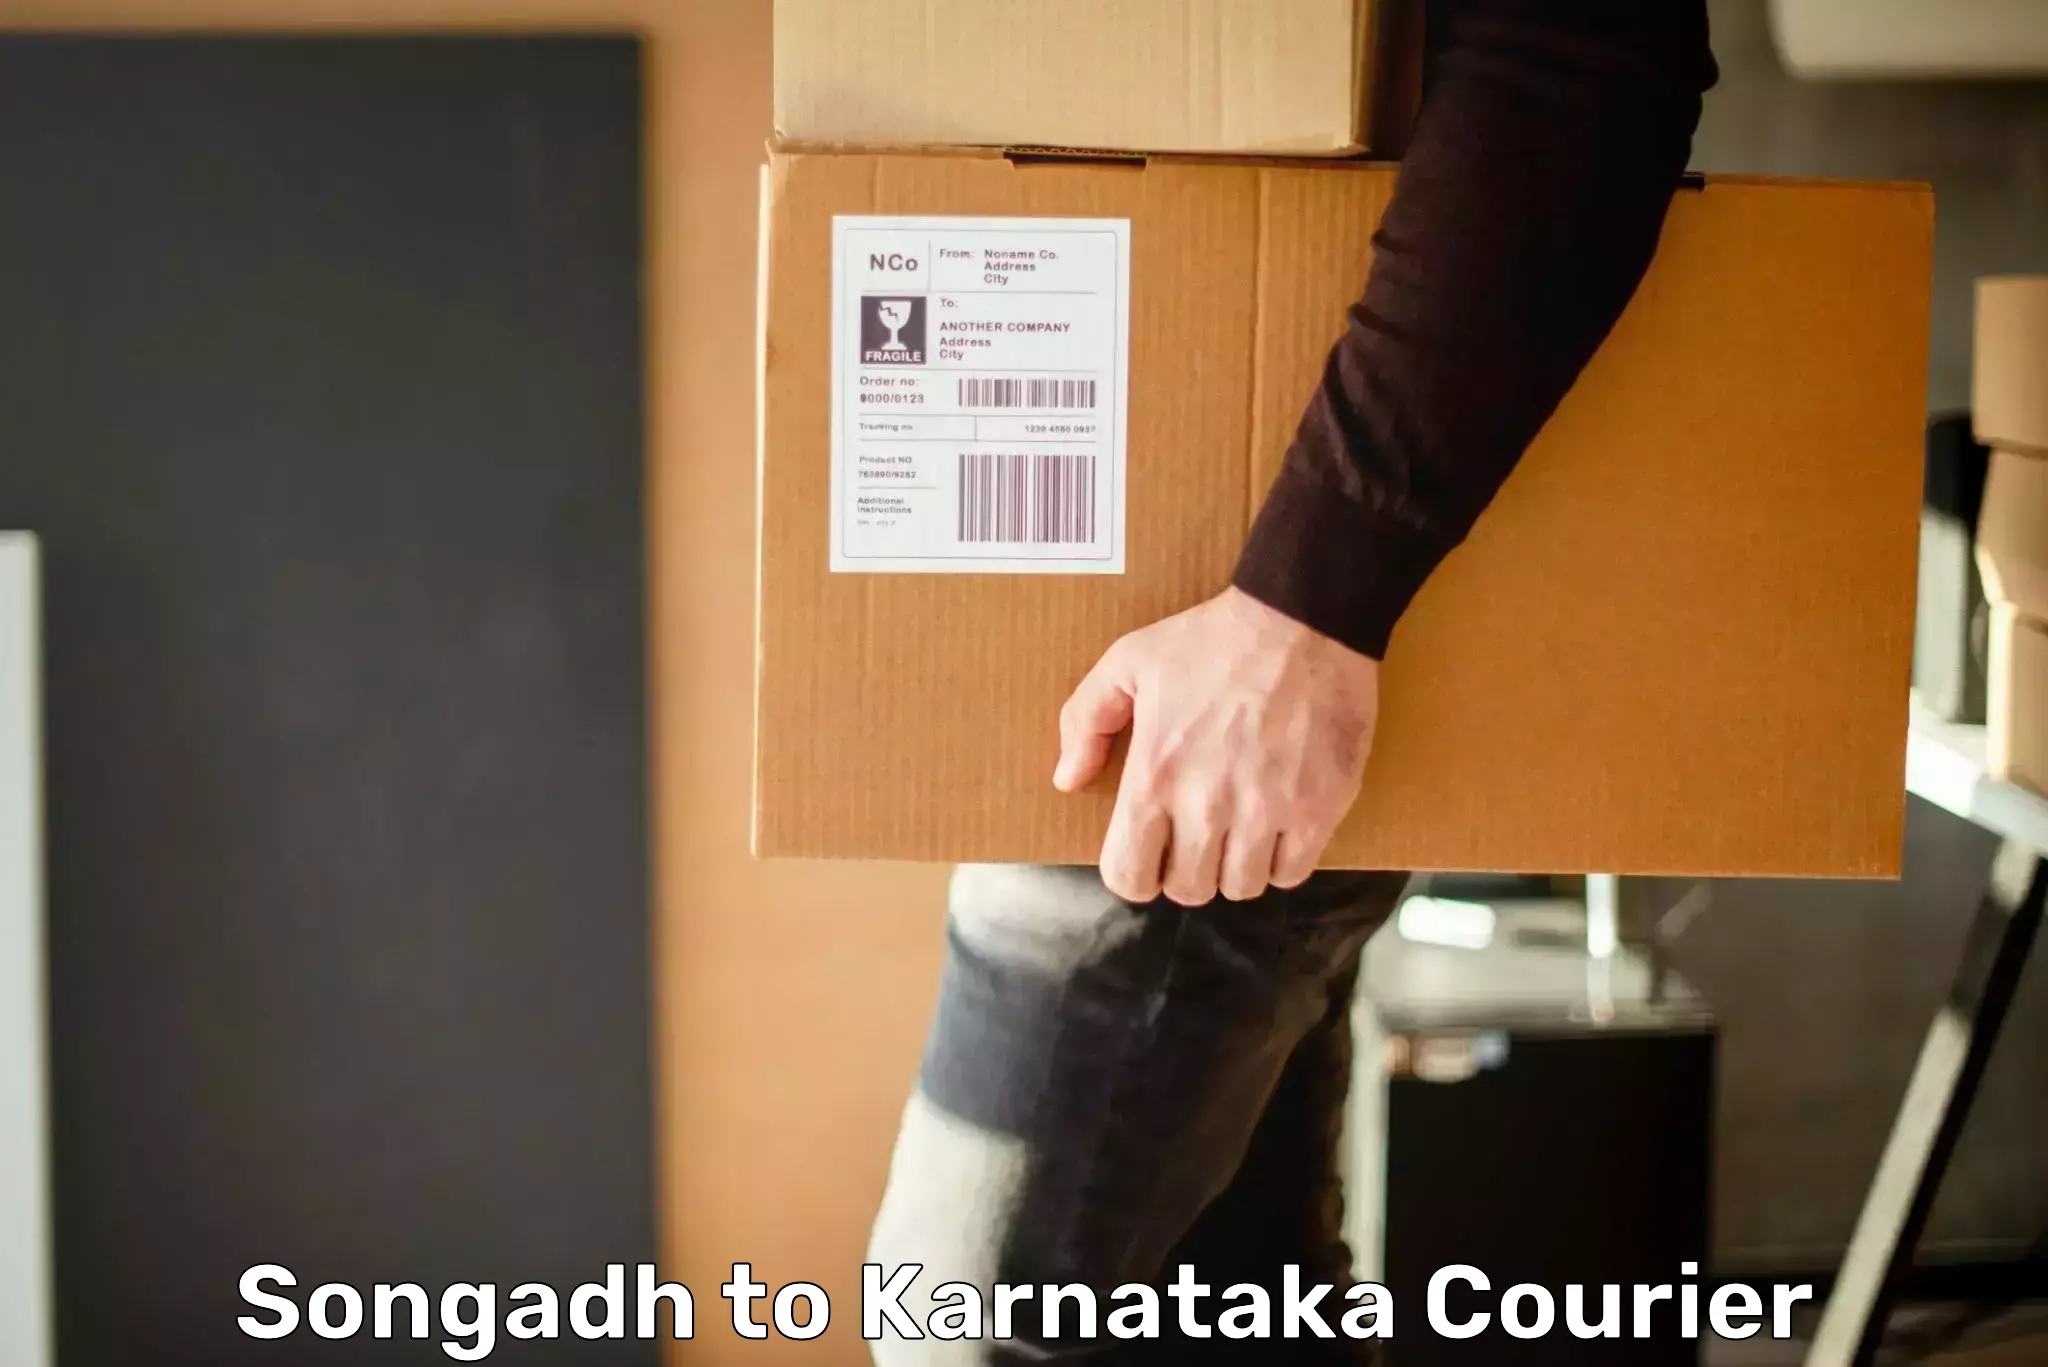 Bulk courier orders Songadh to Mannaekhelli